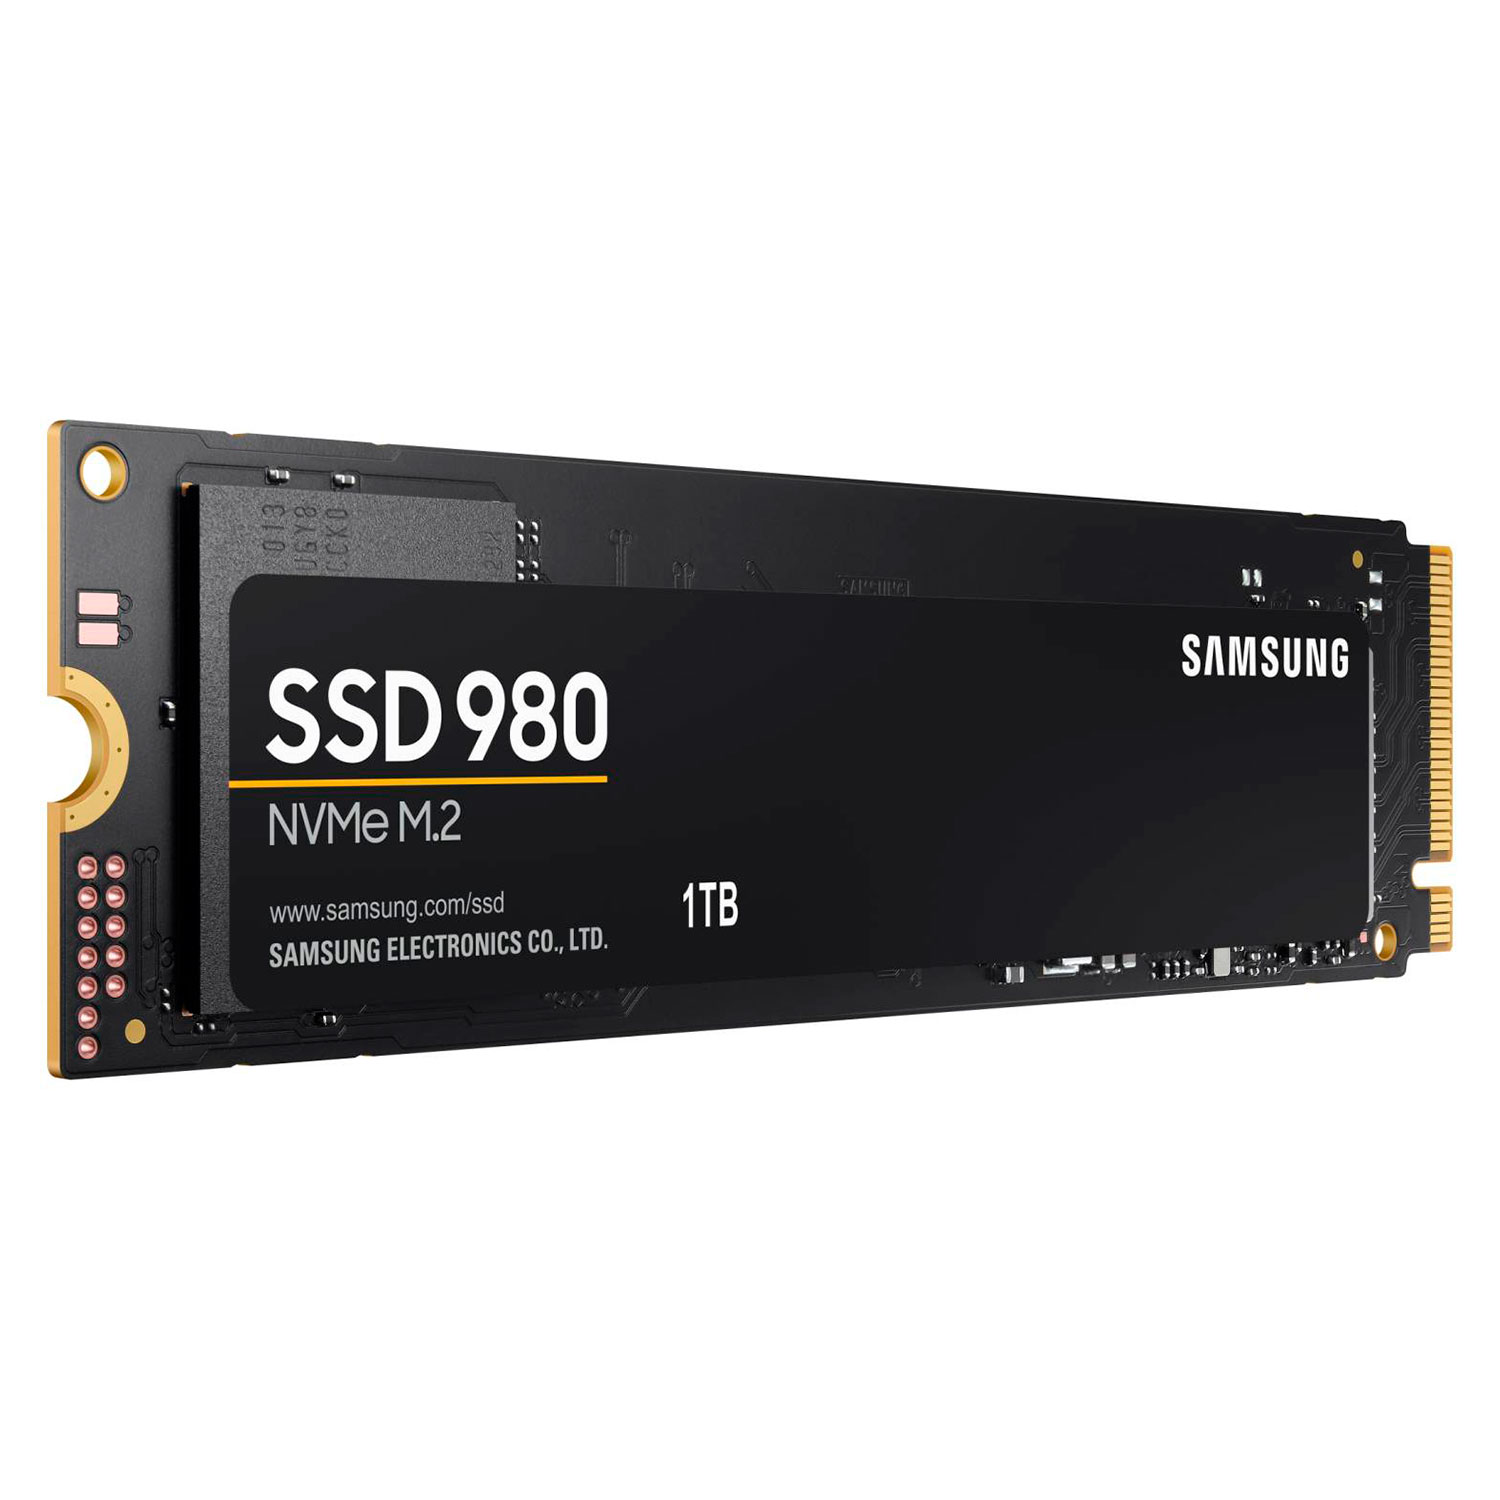 SSD M.2 Samsung 980 1TB NVMe PCIe 3.0 - MZ-V8V1T0B/AM
